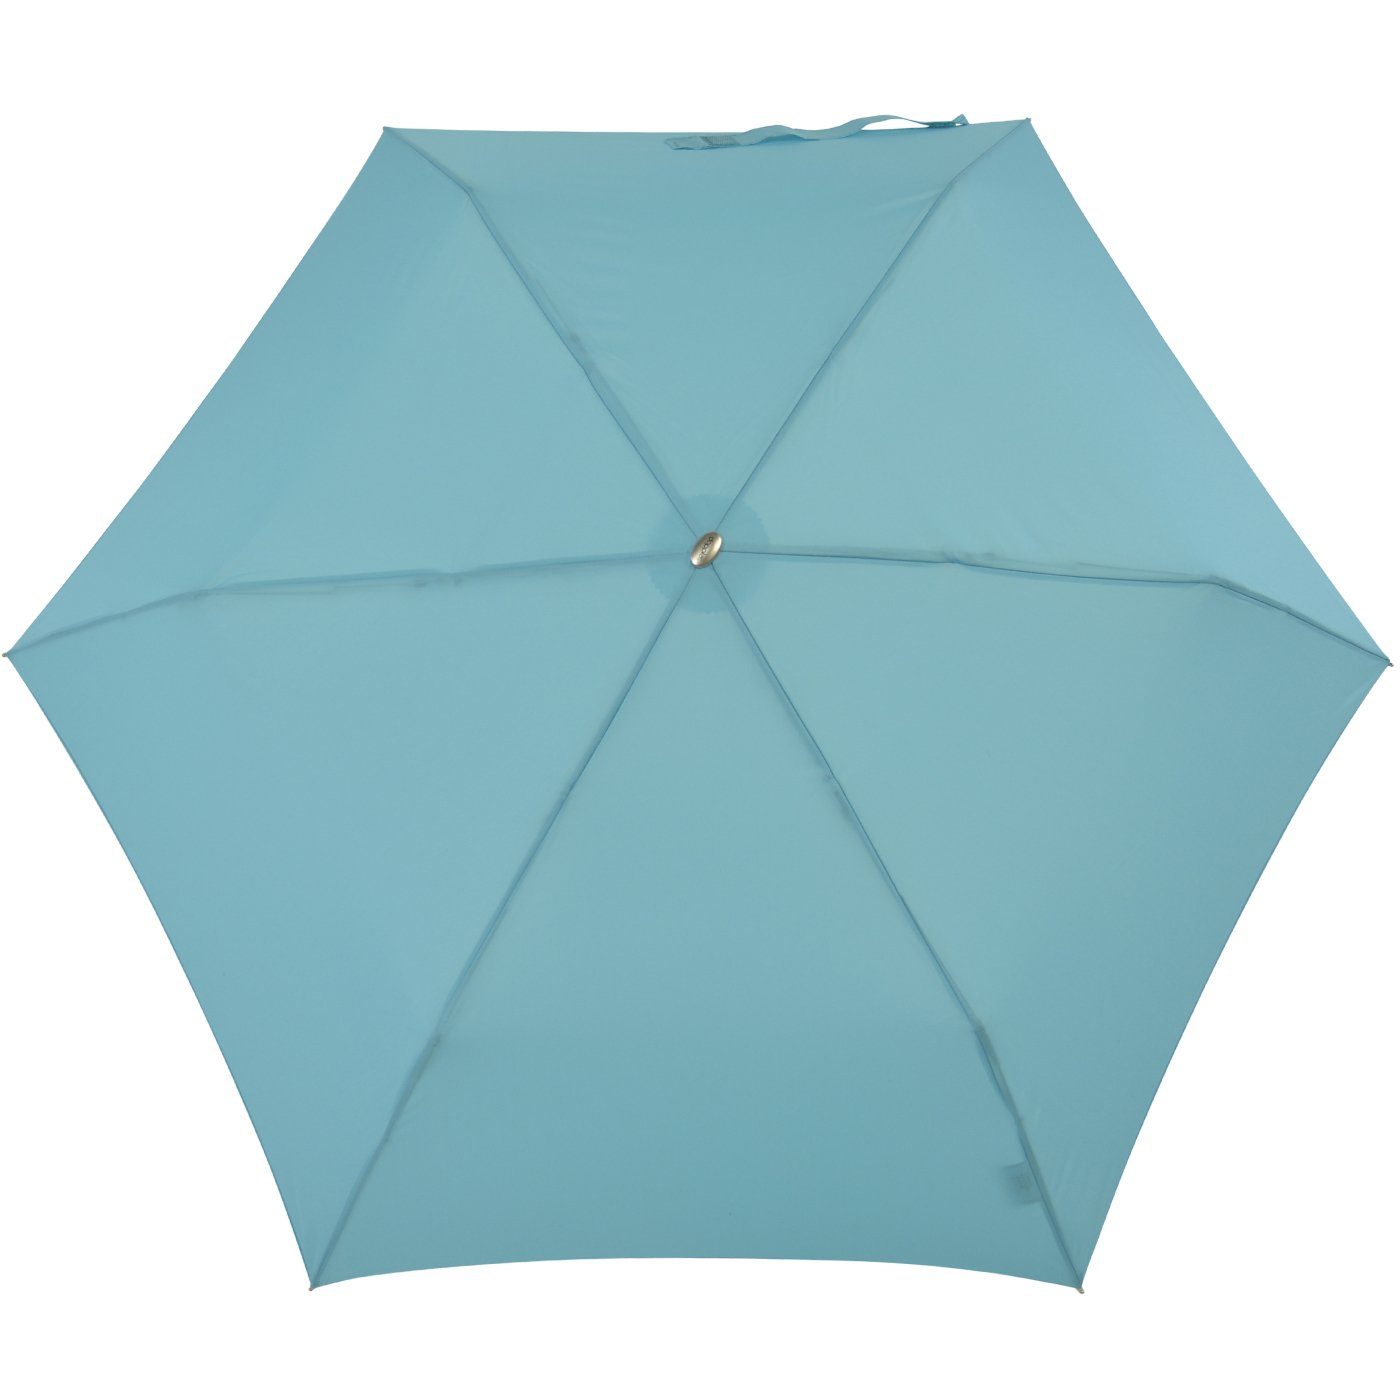 Tasche, für treue jede Begleiter Schirm ein und findet leichter doppler® hellblau dieser flacher Langregenschirm Platz überall